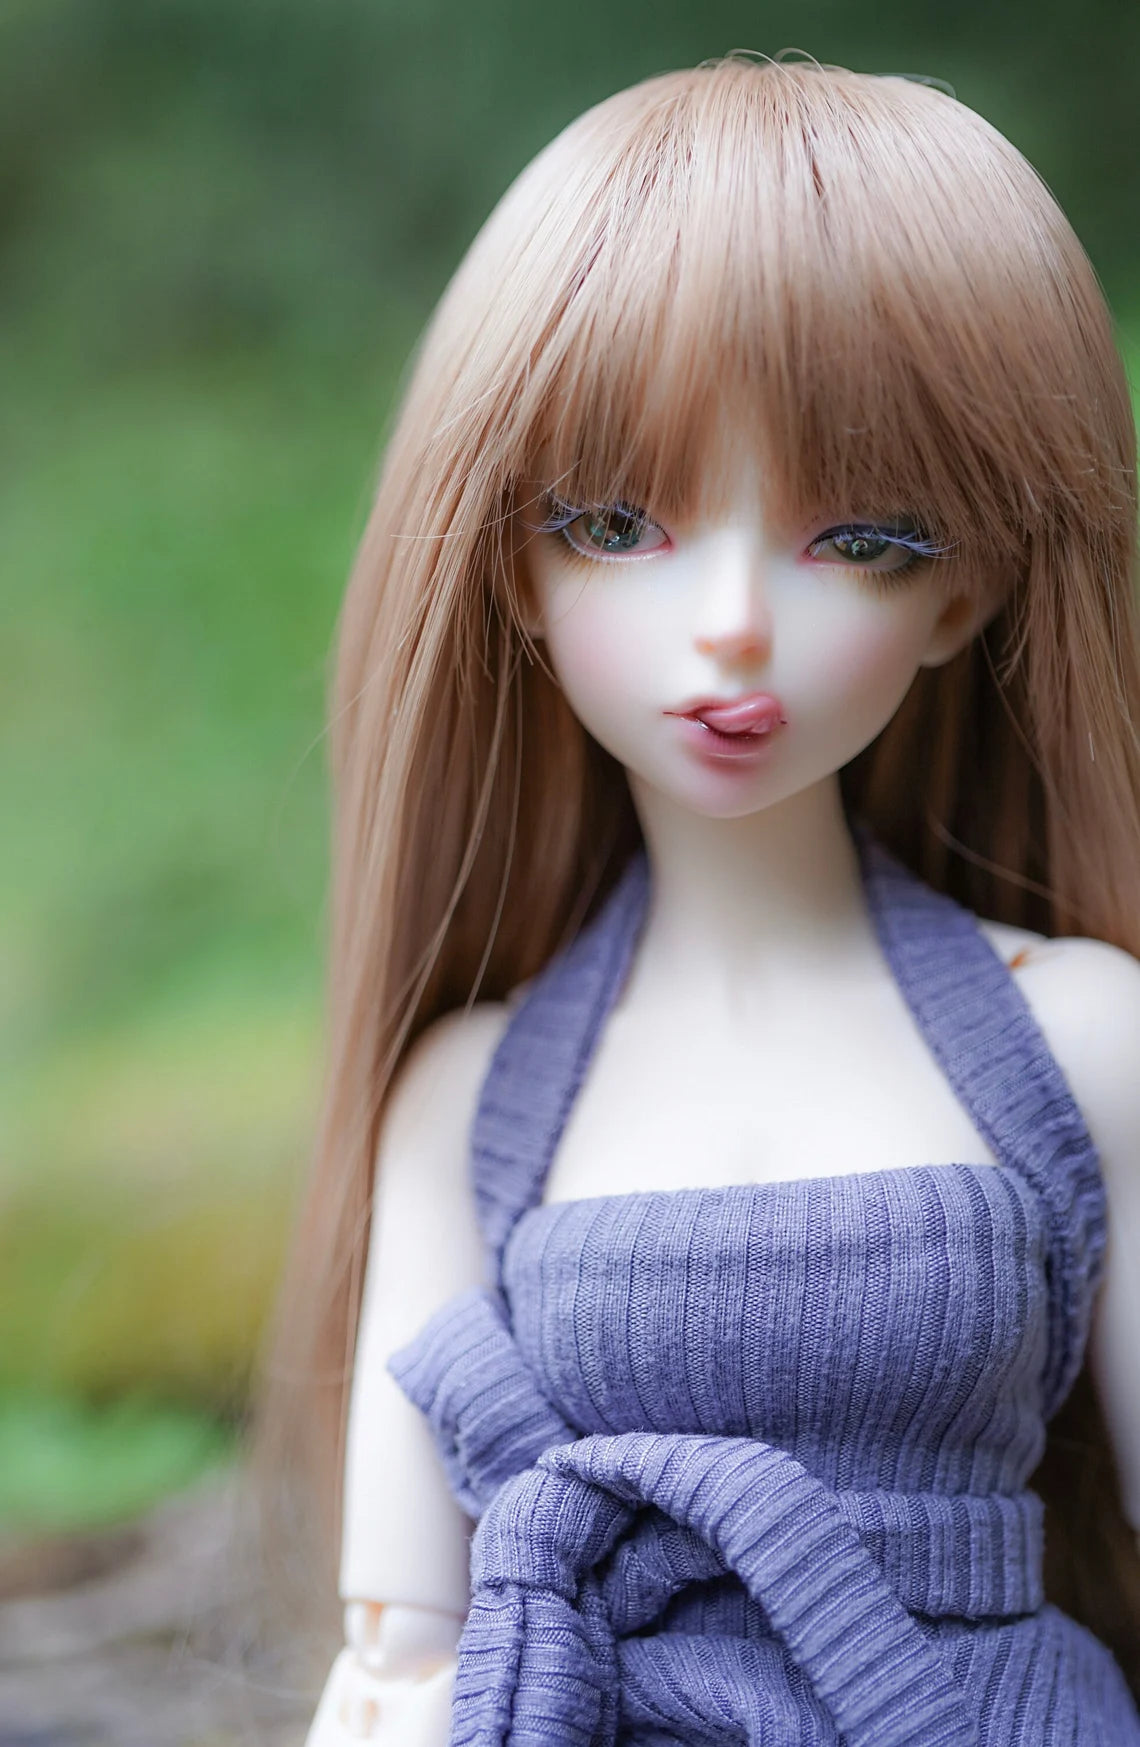 Custom doll Wig for Minifee 1/4 BJD Dolls- "TAN CAPS" 6-7" head size of Bjd, msd, Boneka ,Fairyland Minifee dolls light brown natural